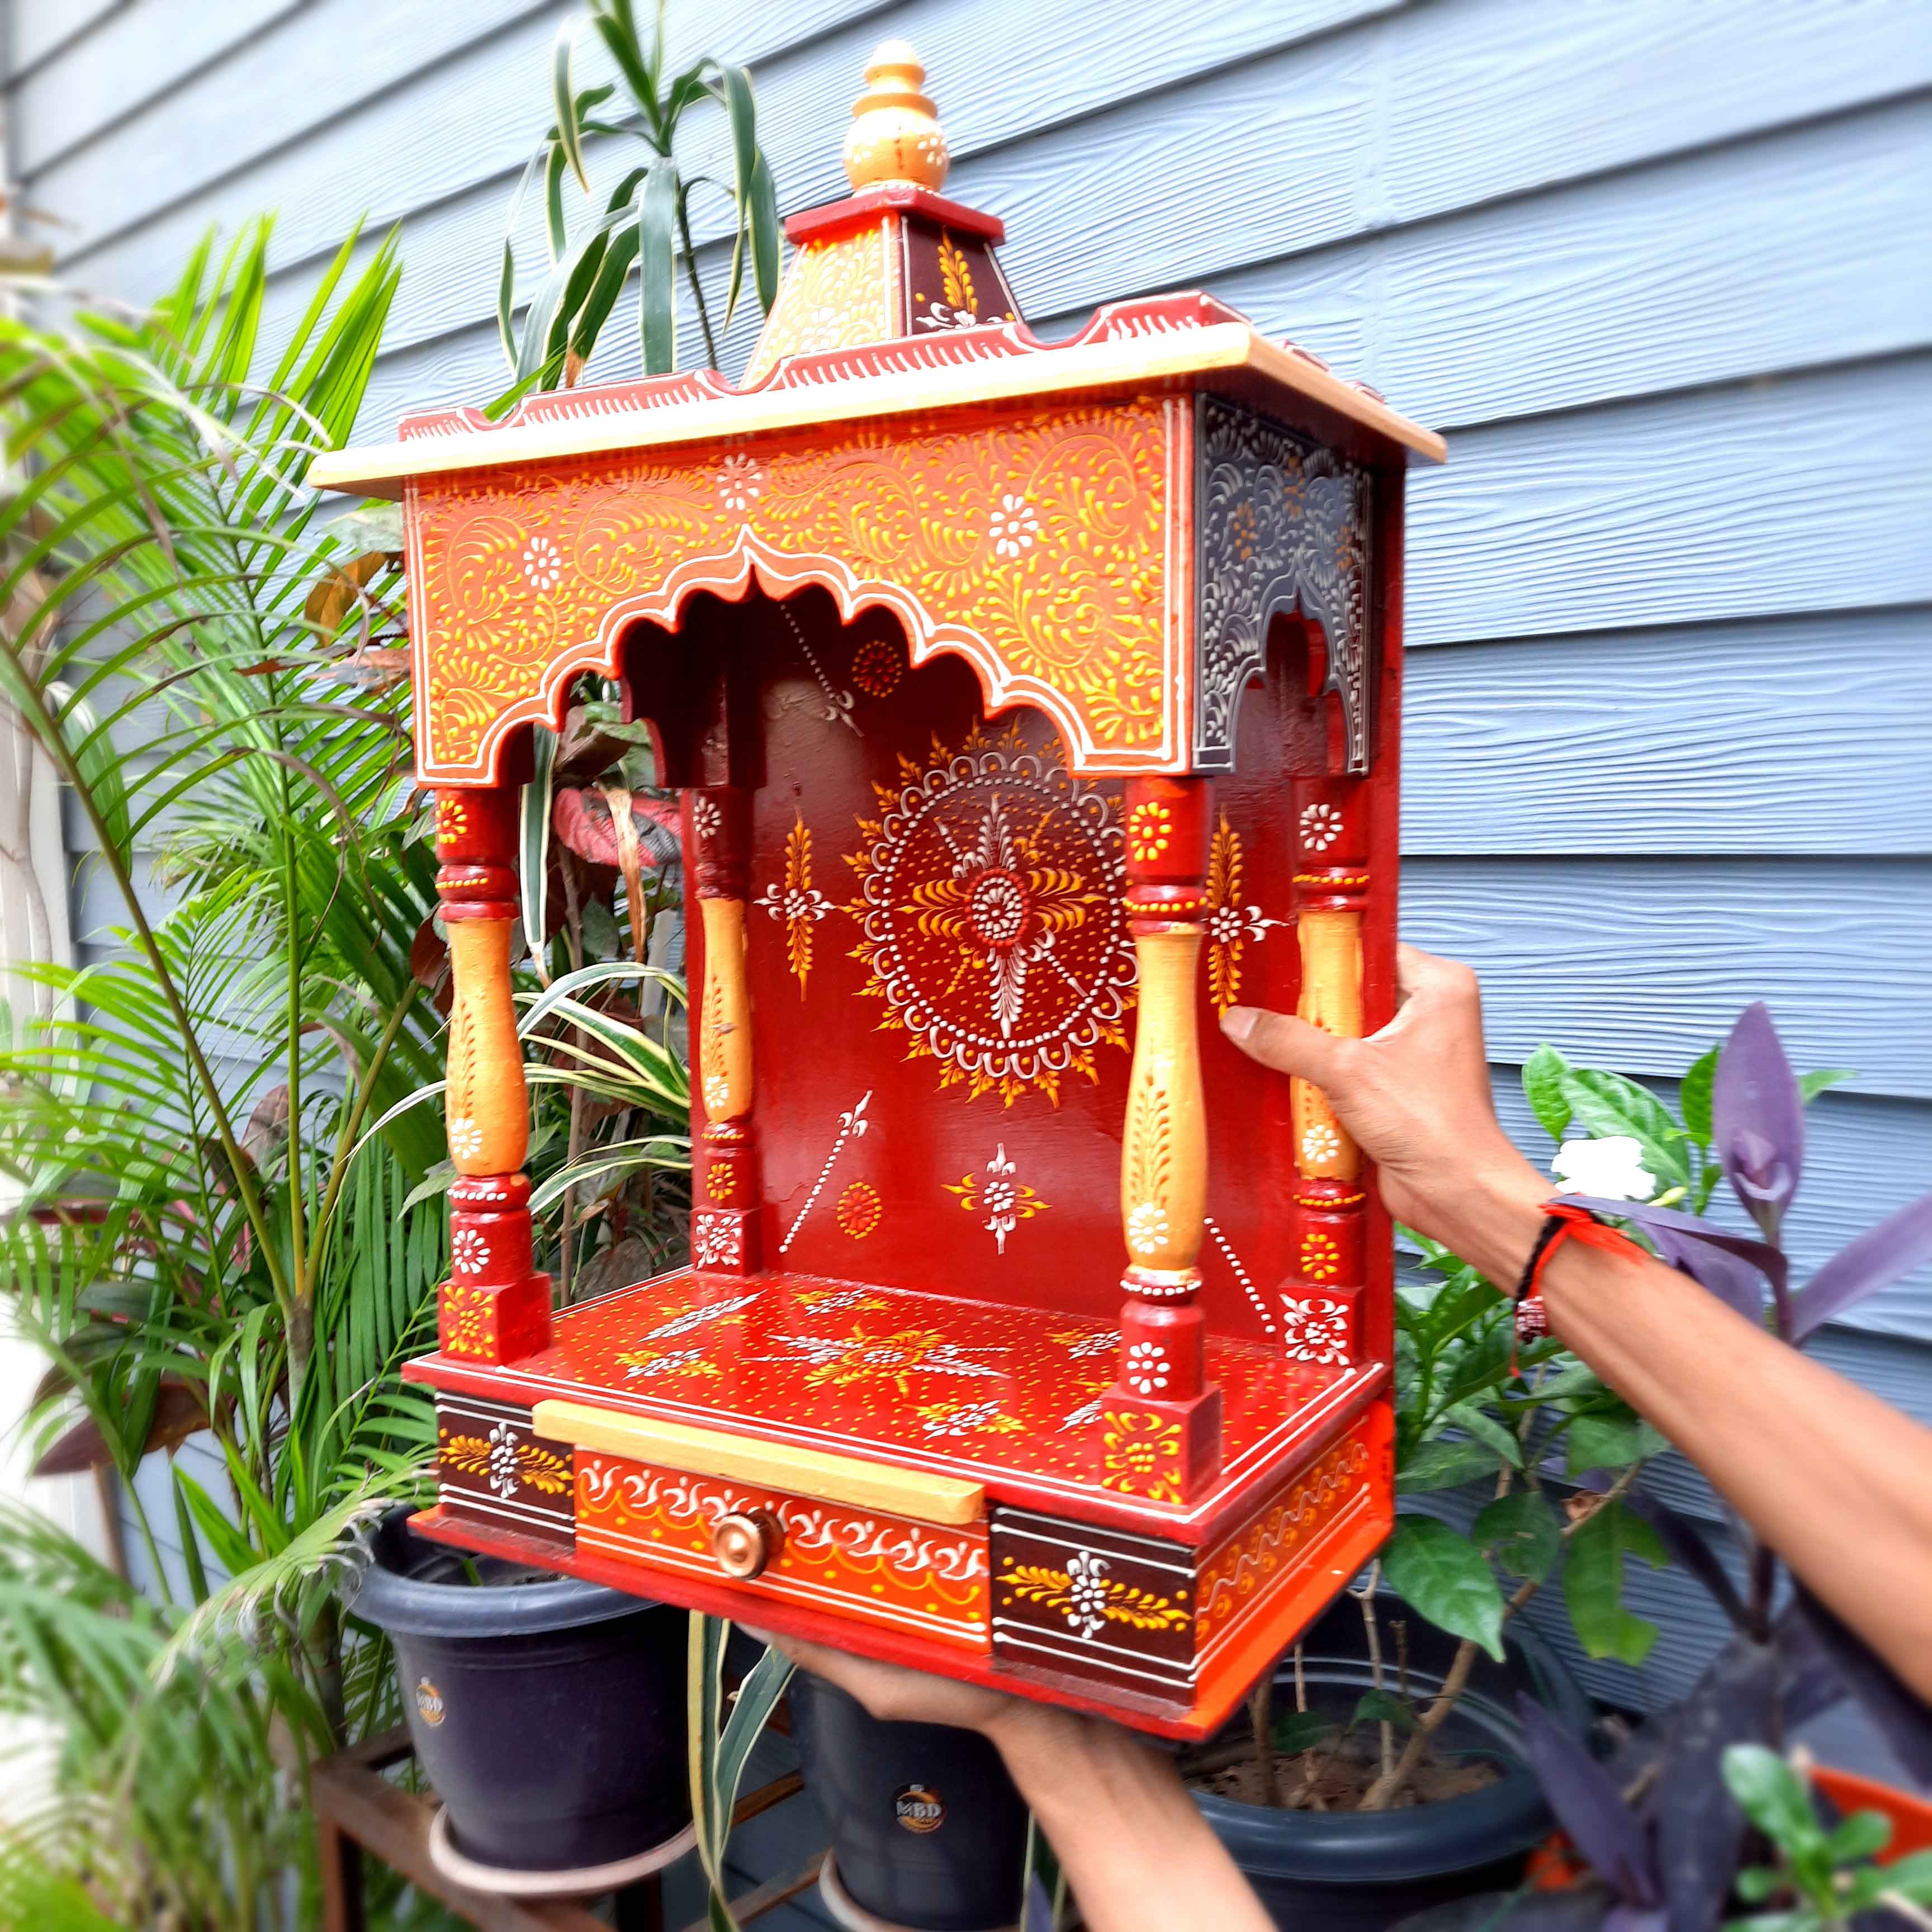 Pooja Mandir | Wooden Temple for Home Big Size -25 Inch - Apkamart #Color_Orange